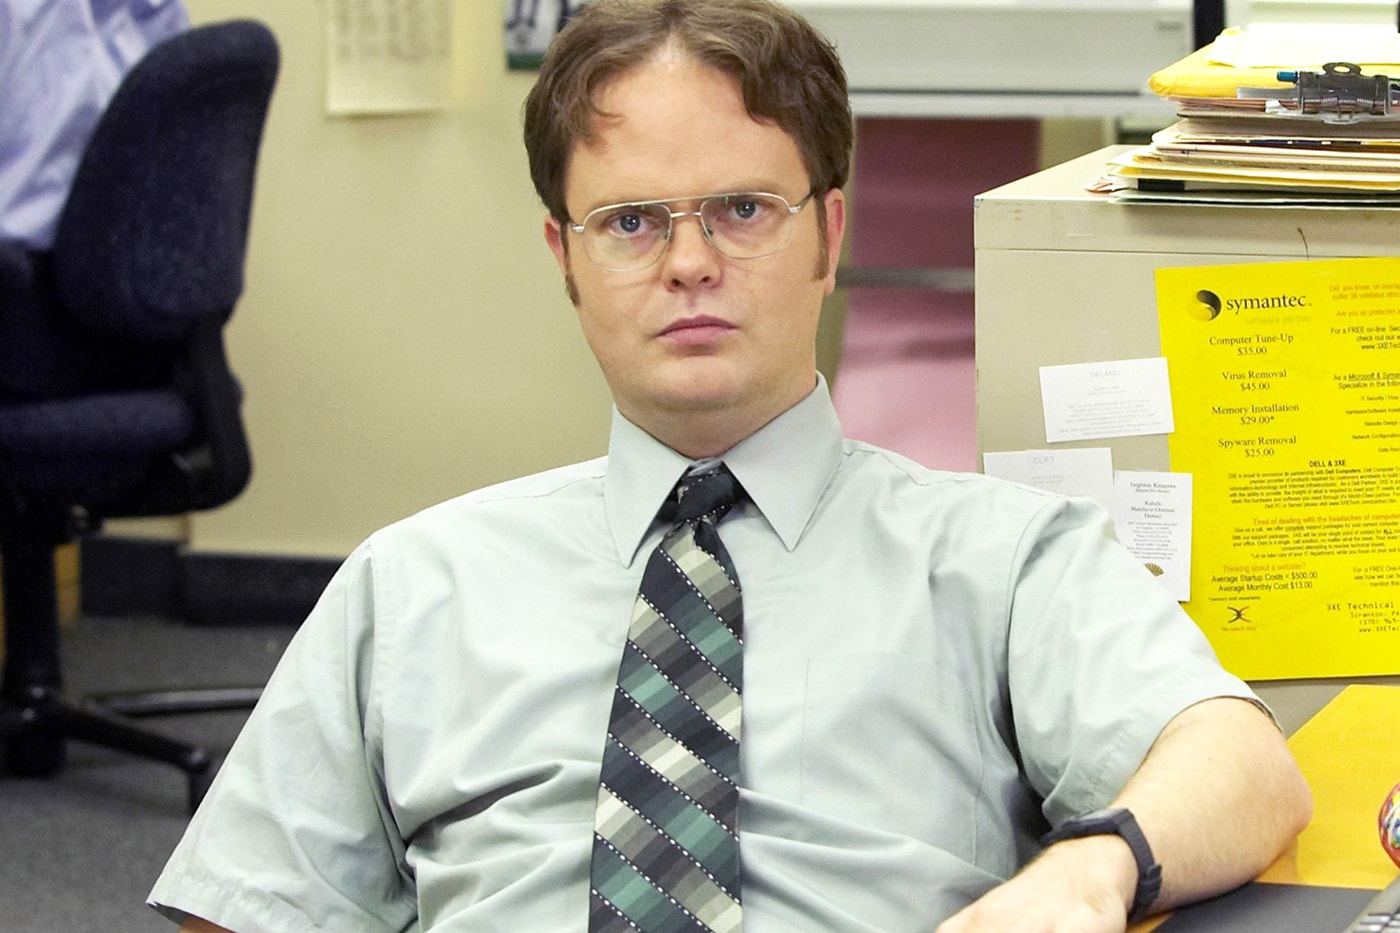 Rainn Wilson Mostly Unhappy on The Office